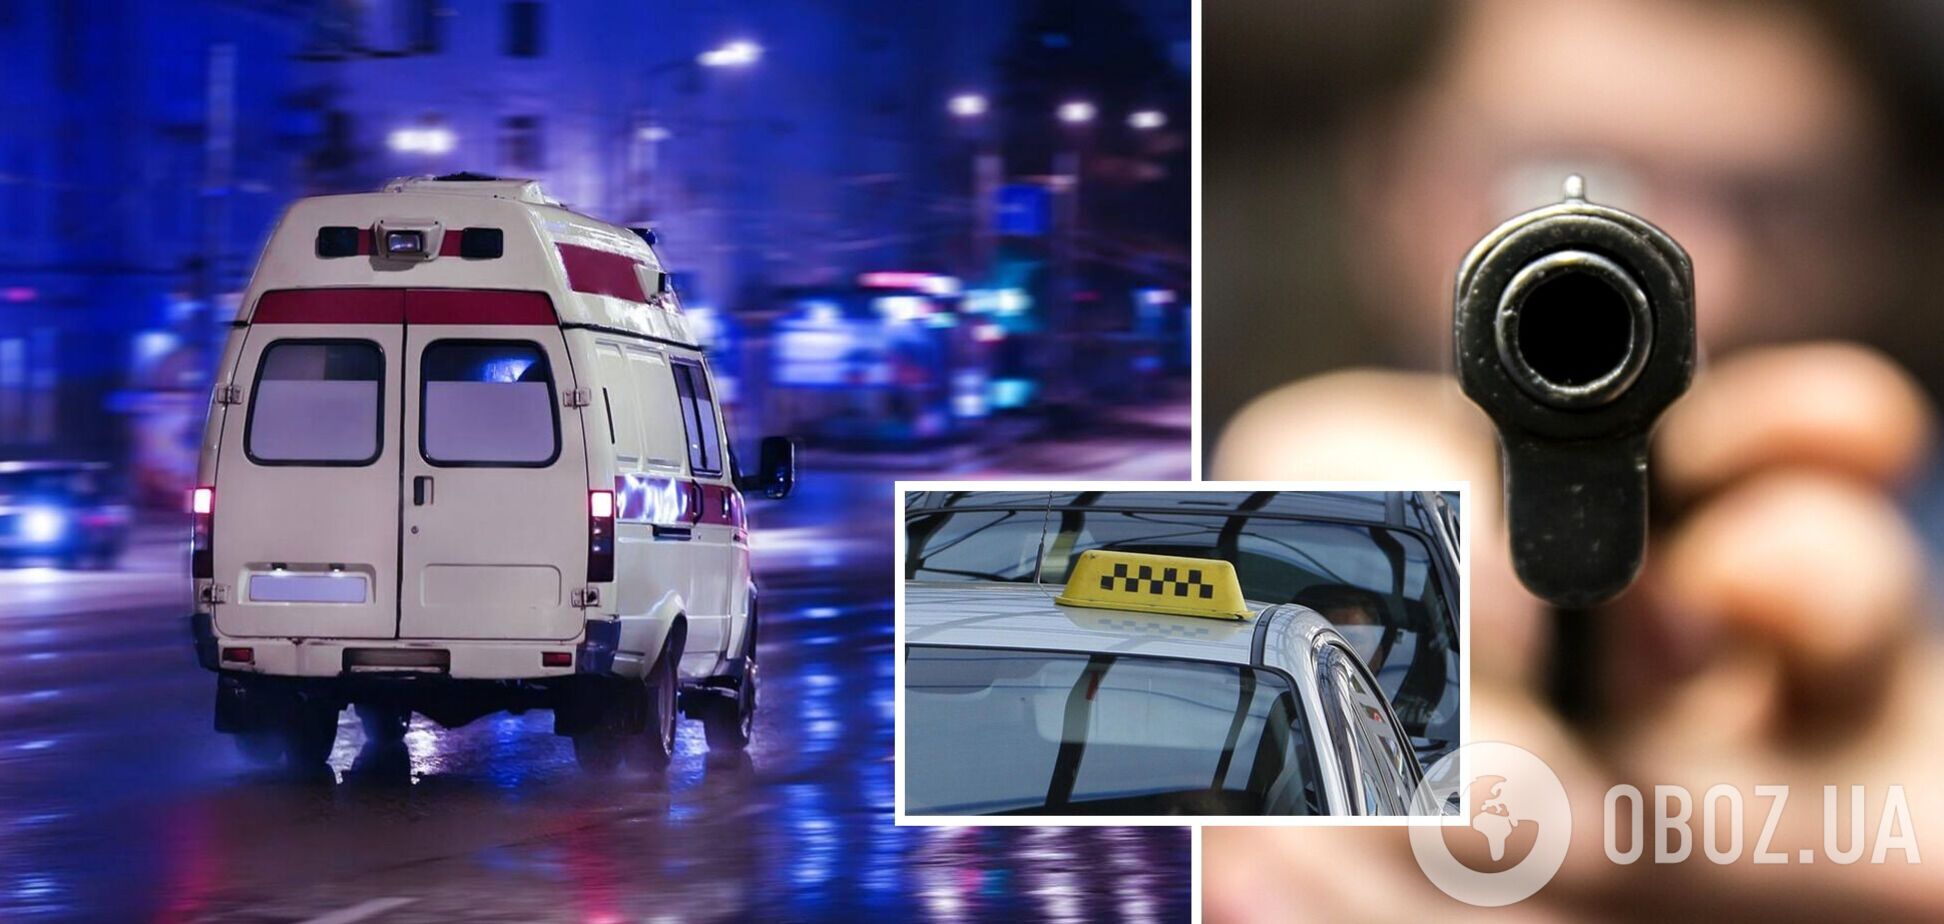 У Дніпрі пасажир таксі вистрелив водію в голову і втік: подробиці трагедії. Фото 18+